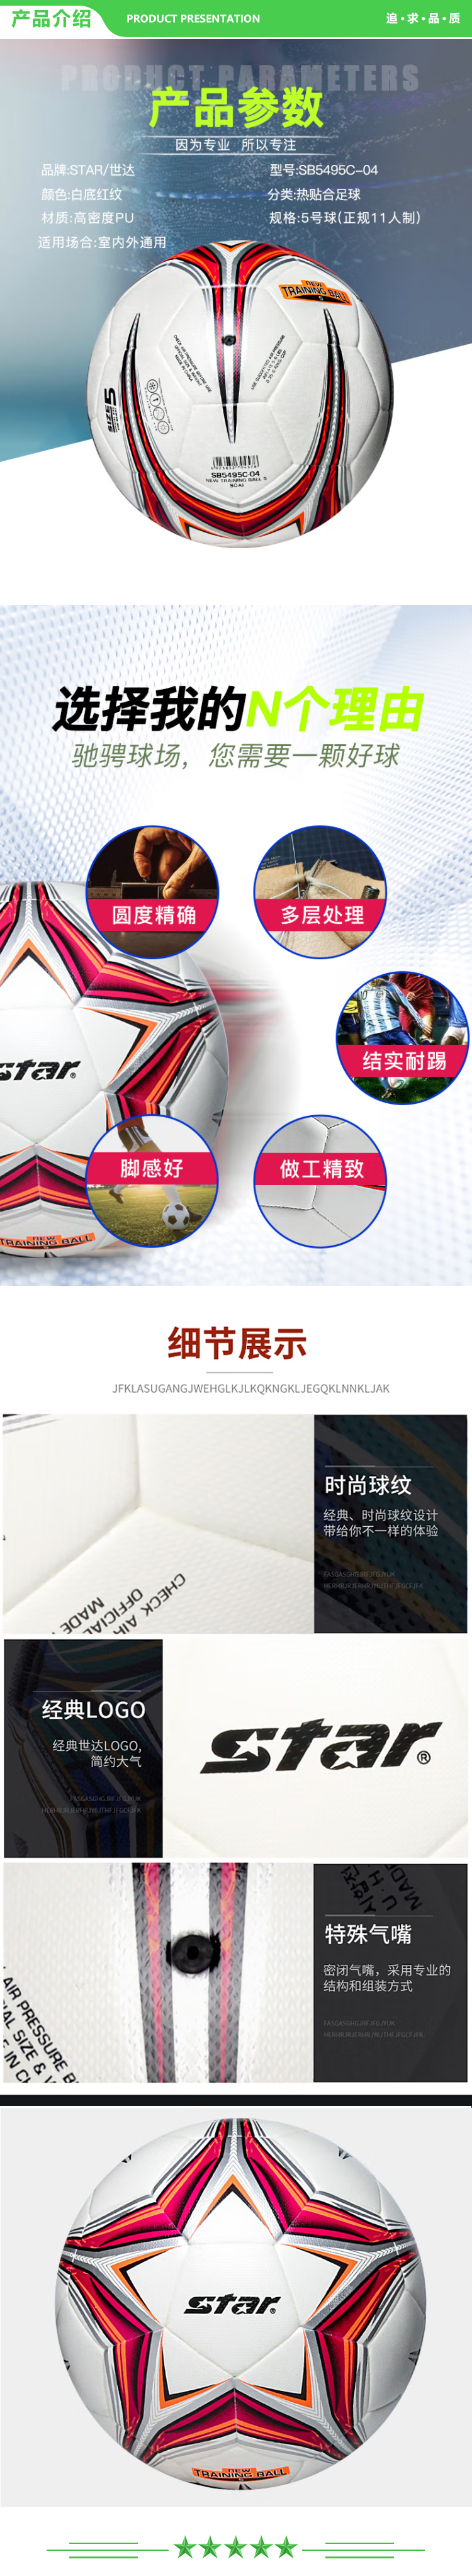 世达 star SB5495C-04 高级橡胶绕线胆热贴合足球 5号 耐磨成人儿童训练竞技用足球比赛用足球 .jpg